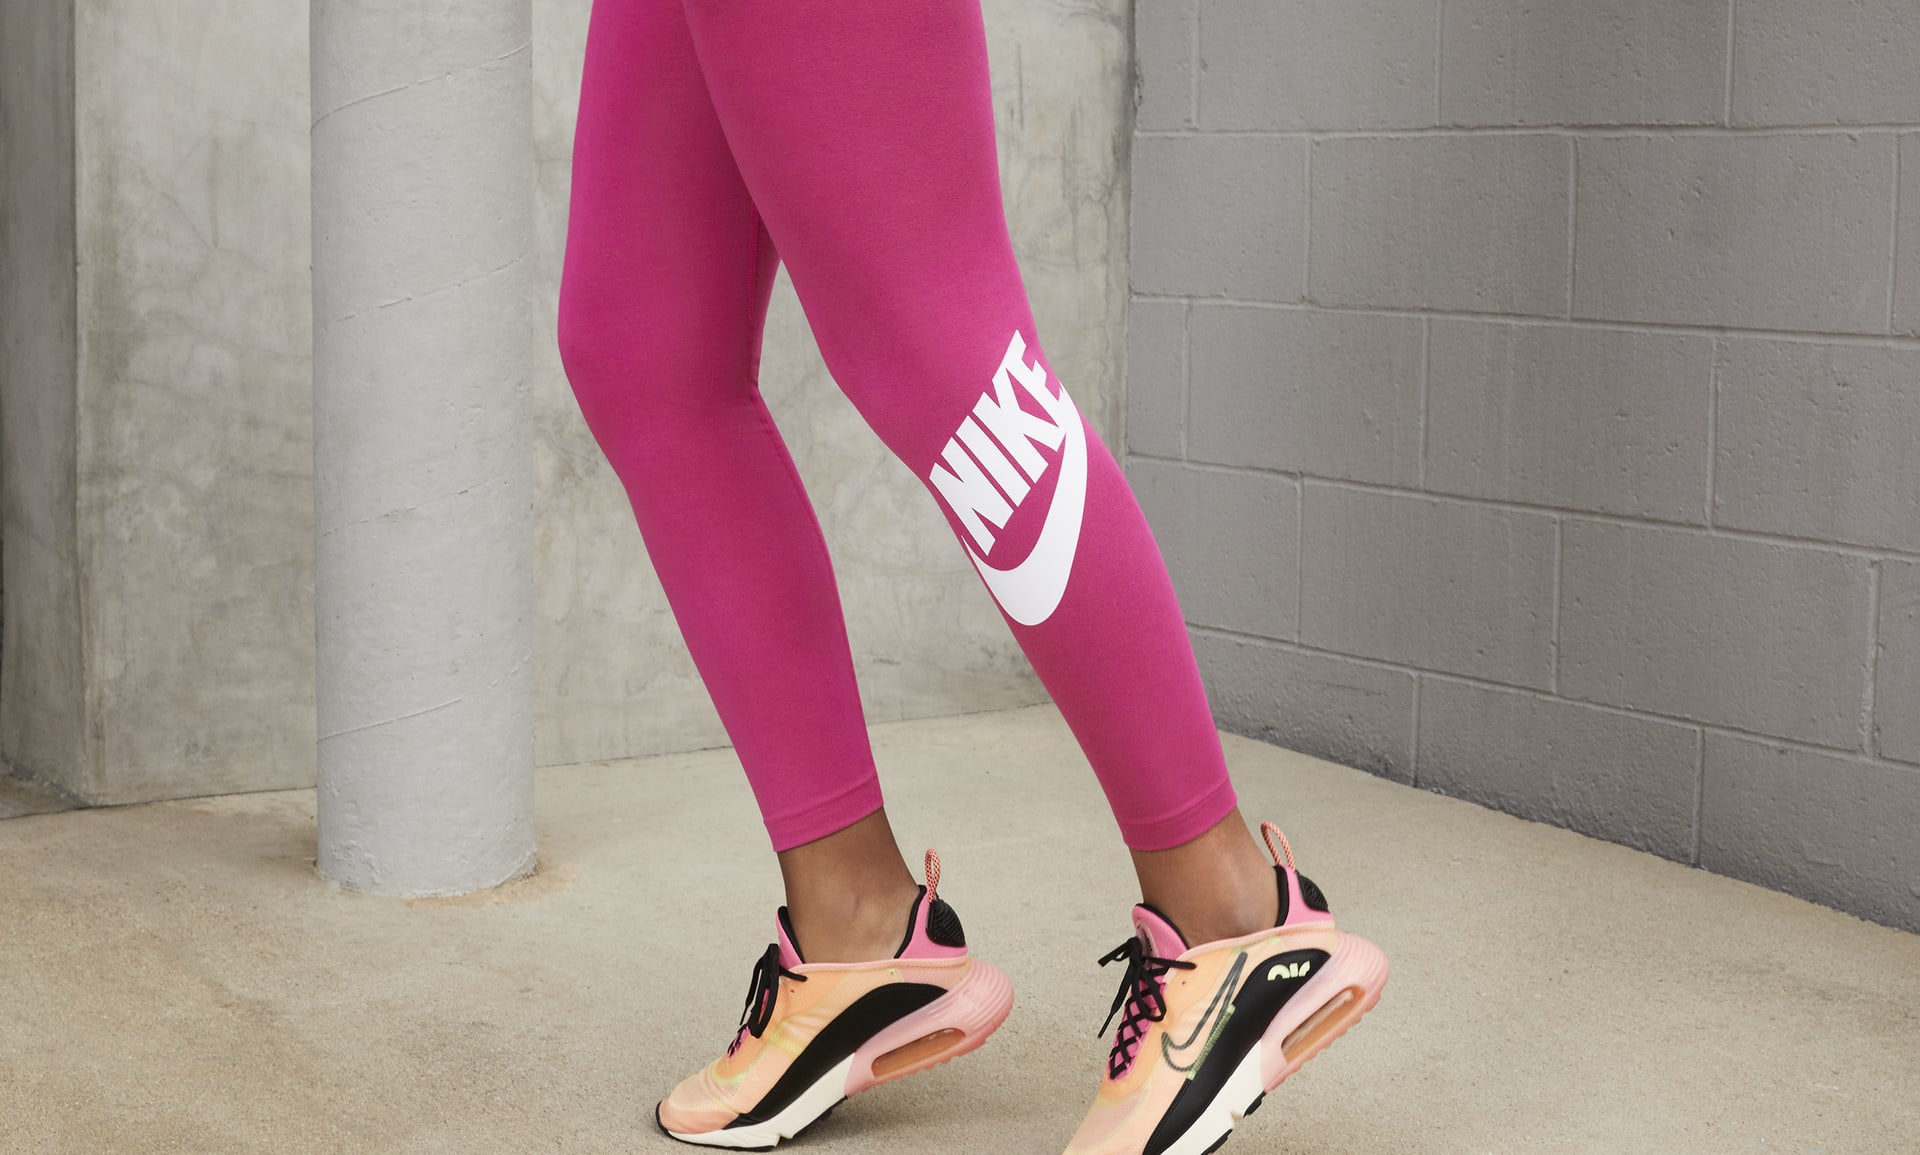 Nike Sportswear Essential Damen Leggings - CZ8528-063 - Grau